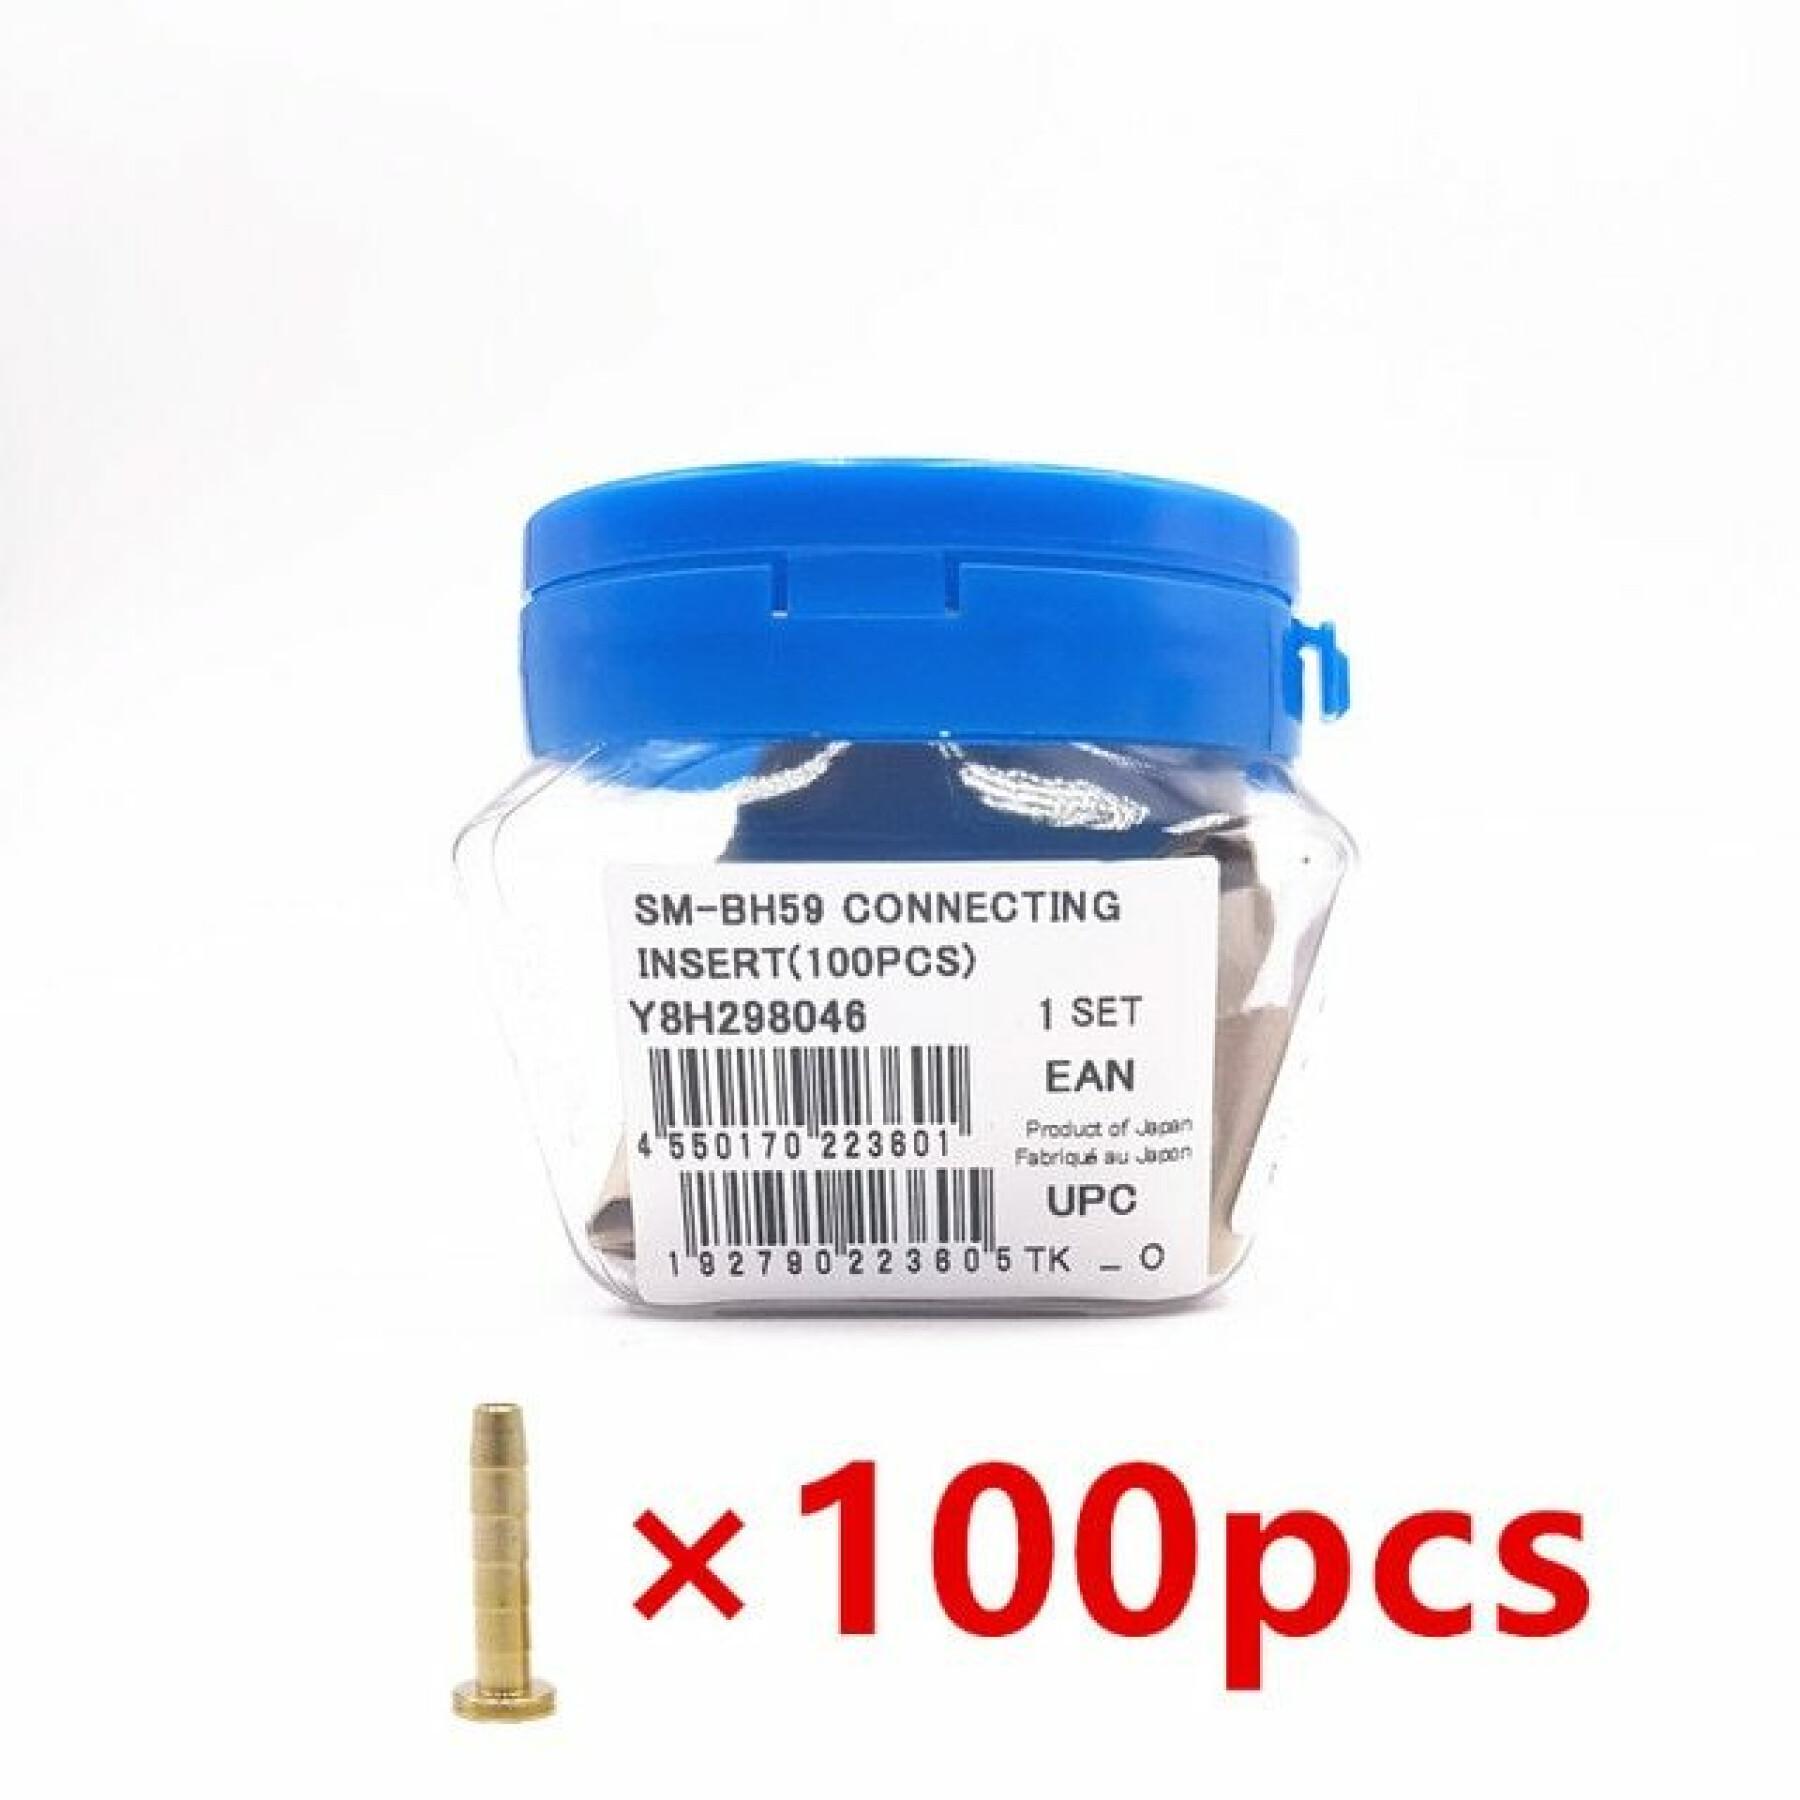 Confezione da 100 inserti di connessione per 10v Shimano SM-BH59